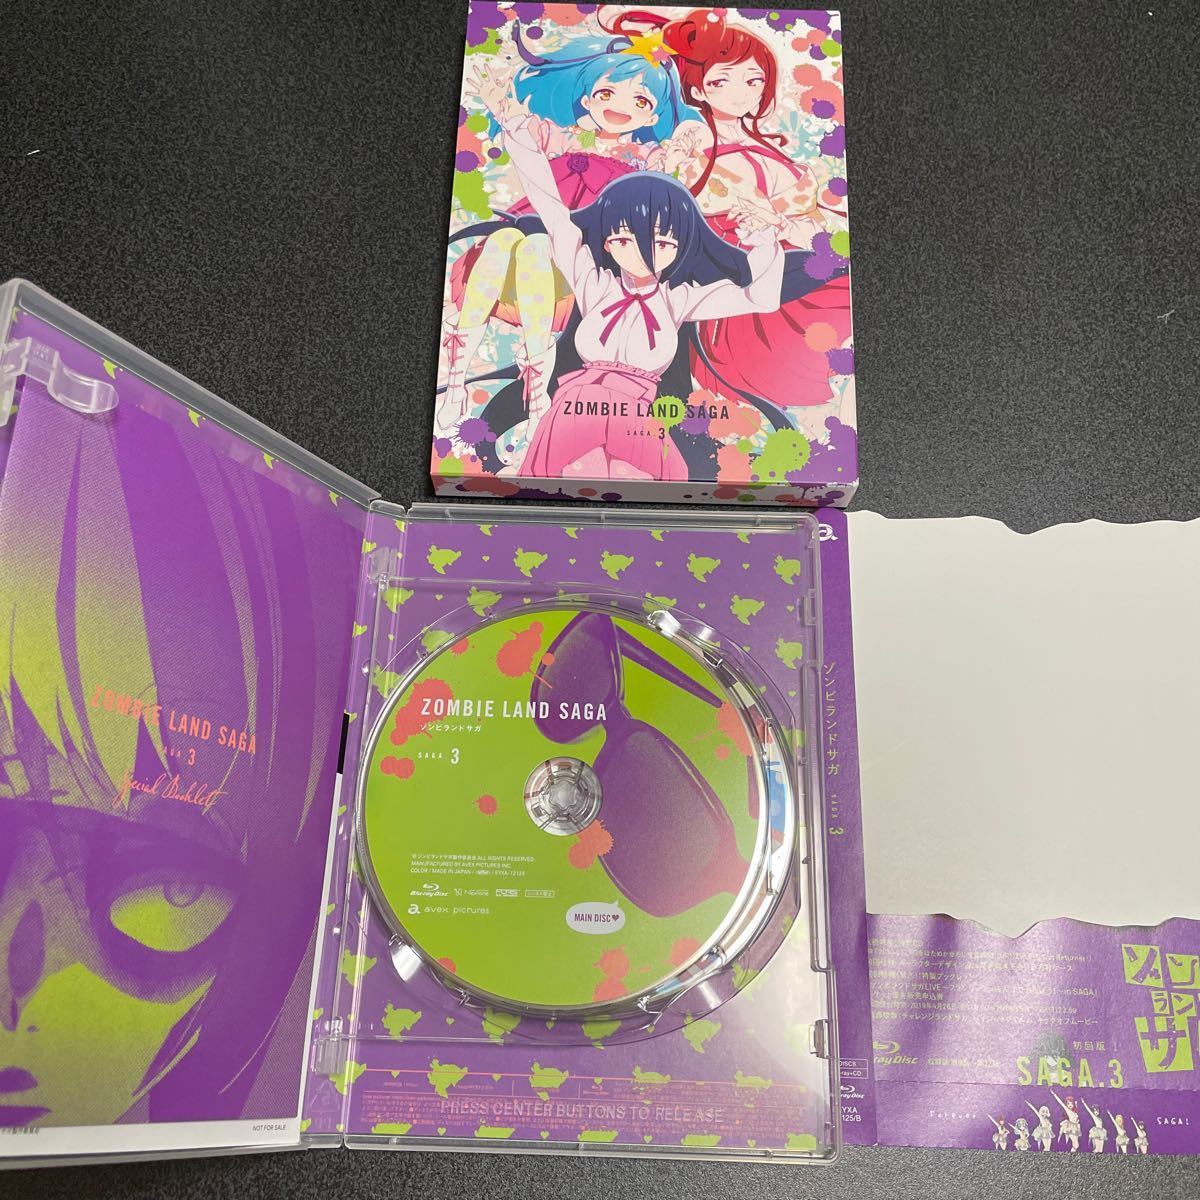 アニメBlu-ray Discゾンビランドサガ 初回版 全3巻セット(Amazon全巻収納BOX付き) Blu-ray